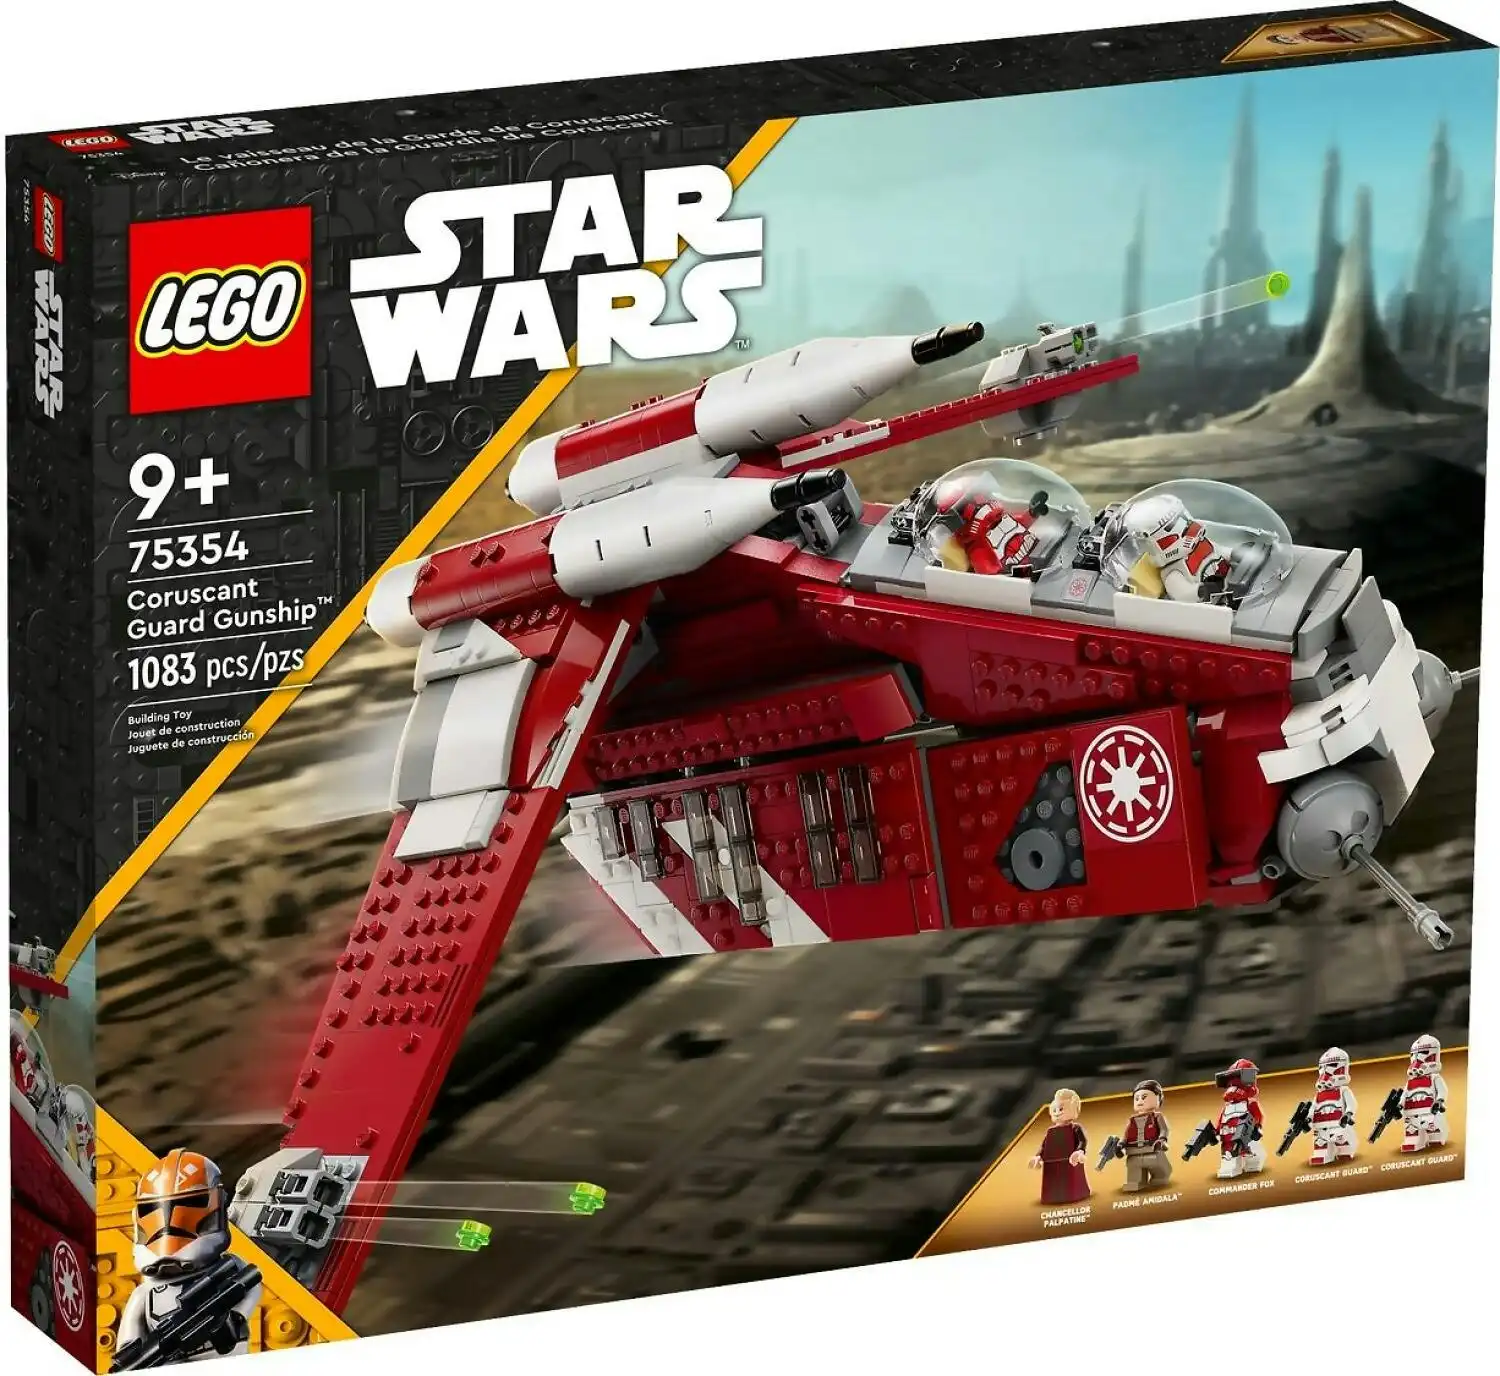 LEGO 75354 Coruscant Guard Gunship - Star Wars